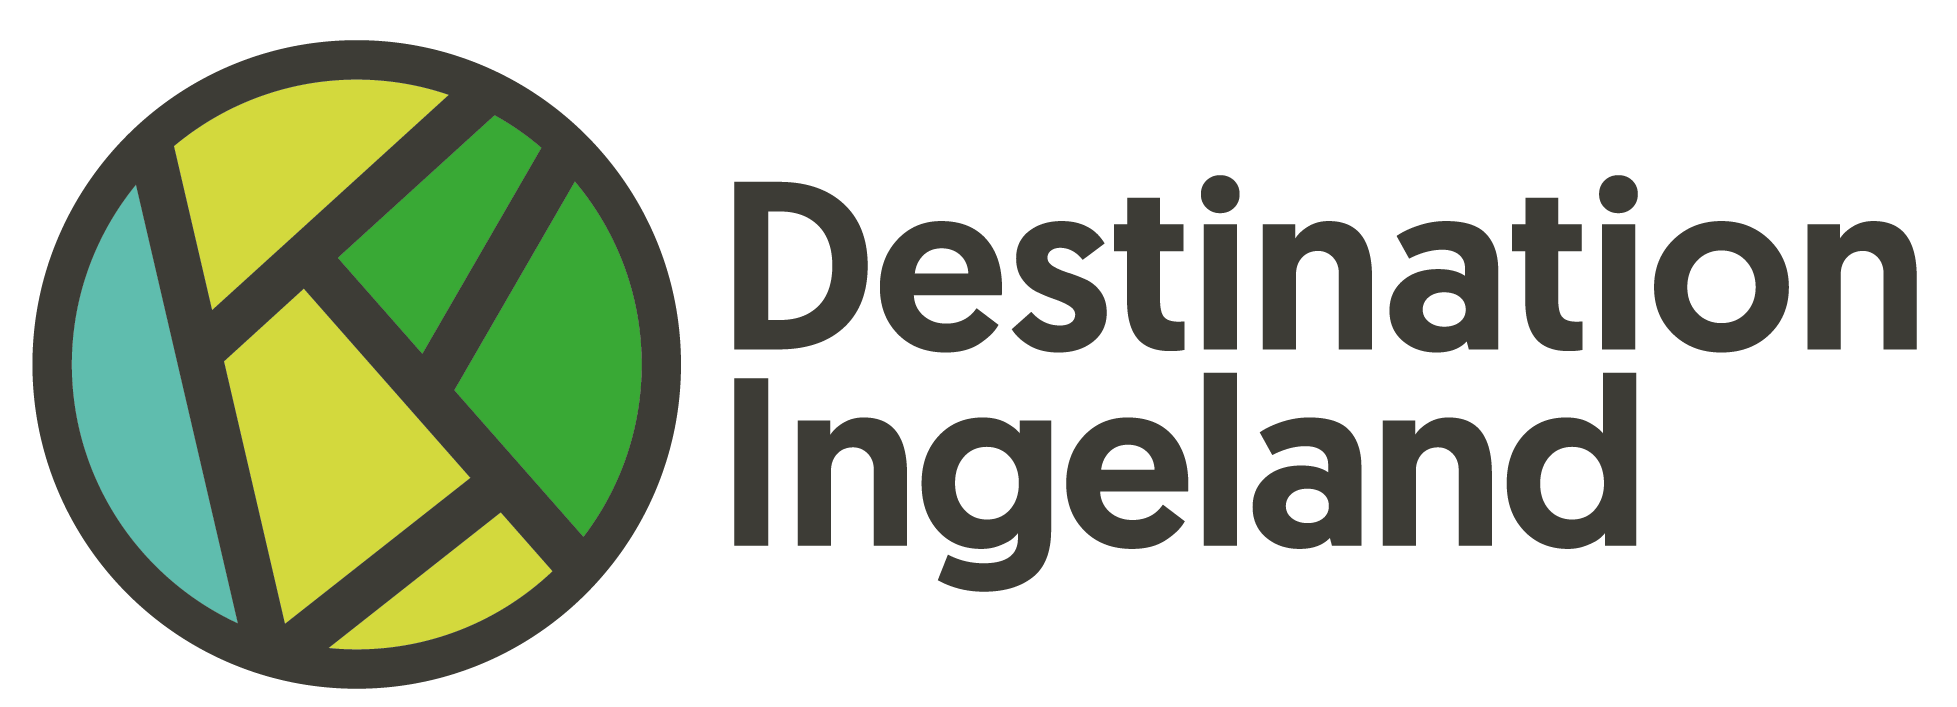 Destination Ingeland logo